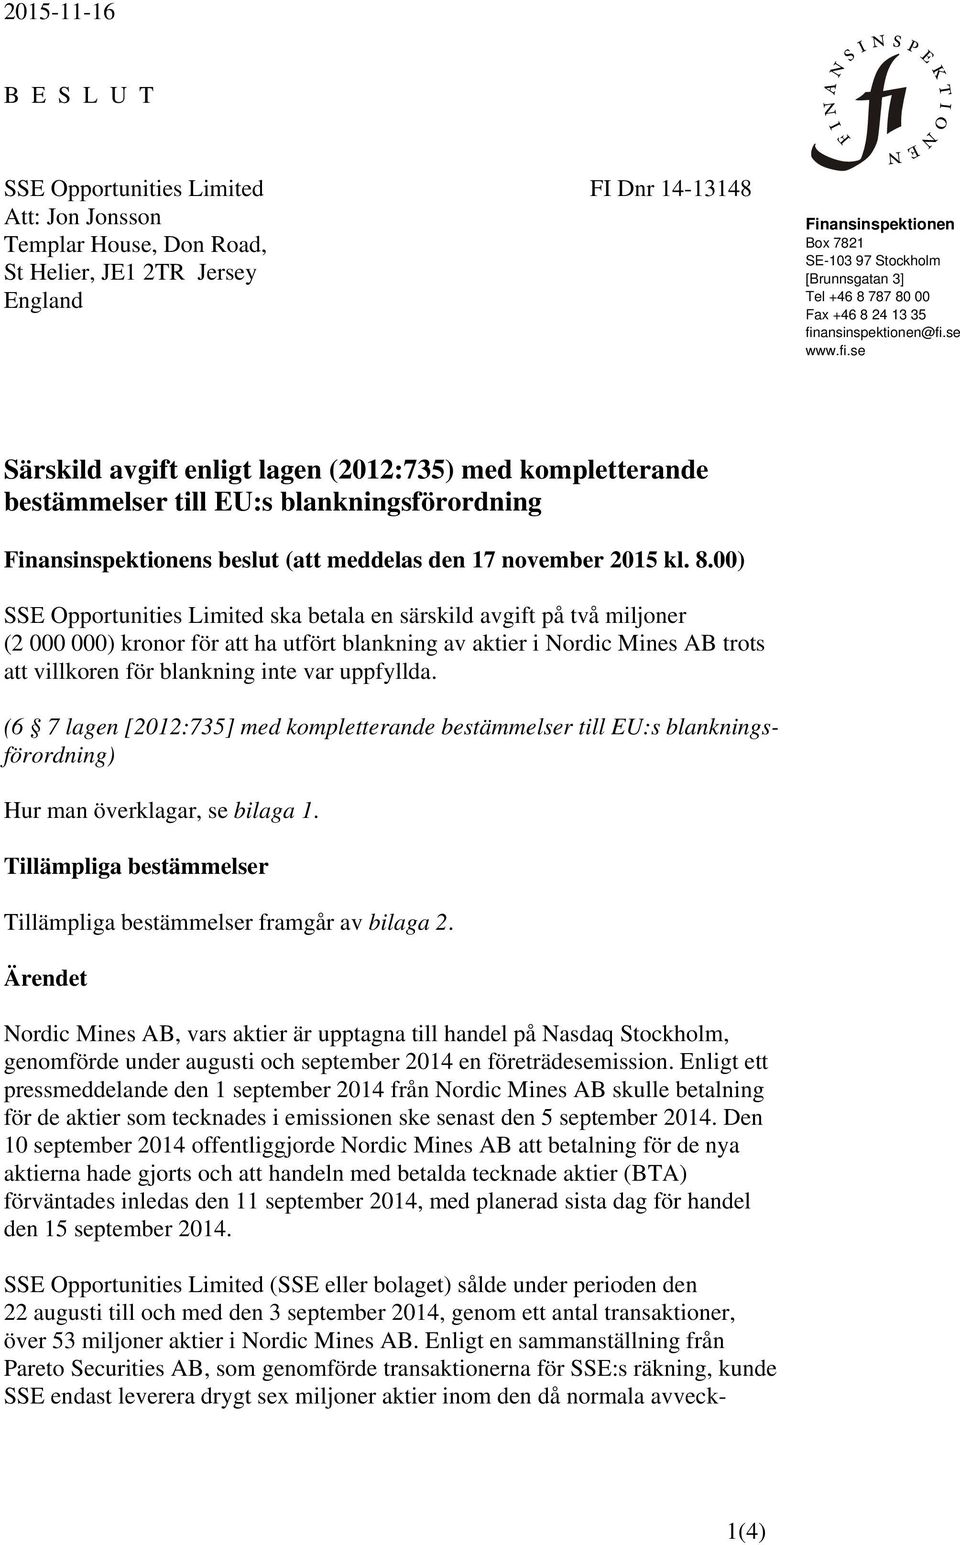 ansinspektionen@fi.se www.fi.se Särskild avgift enligt lagen (2012:735) med kompletterande bestämmelser till EU:s blankningsförordning Finansinspektionens beslut (att meddelas den 17 november 2015 kl.